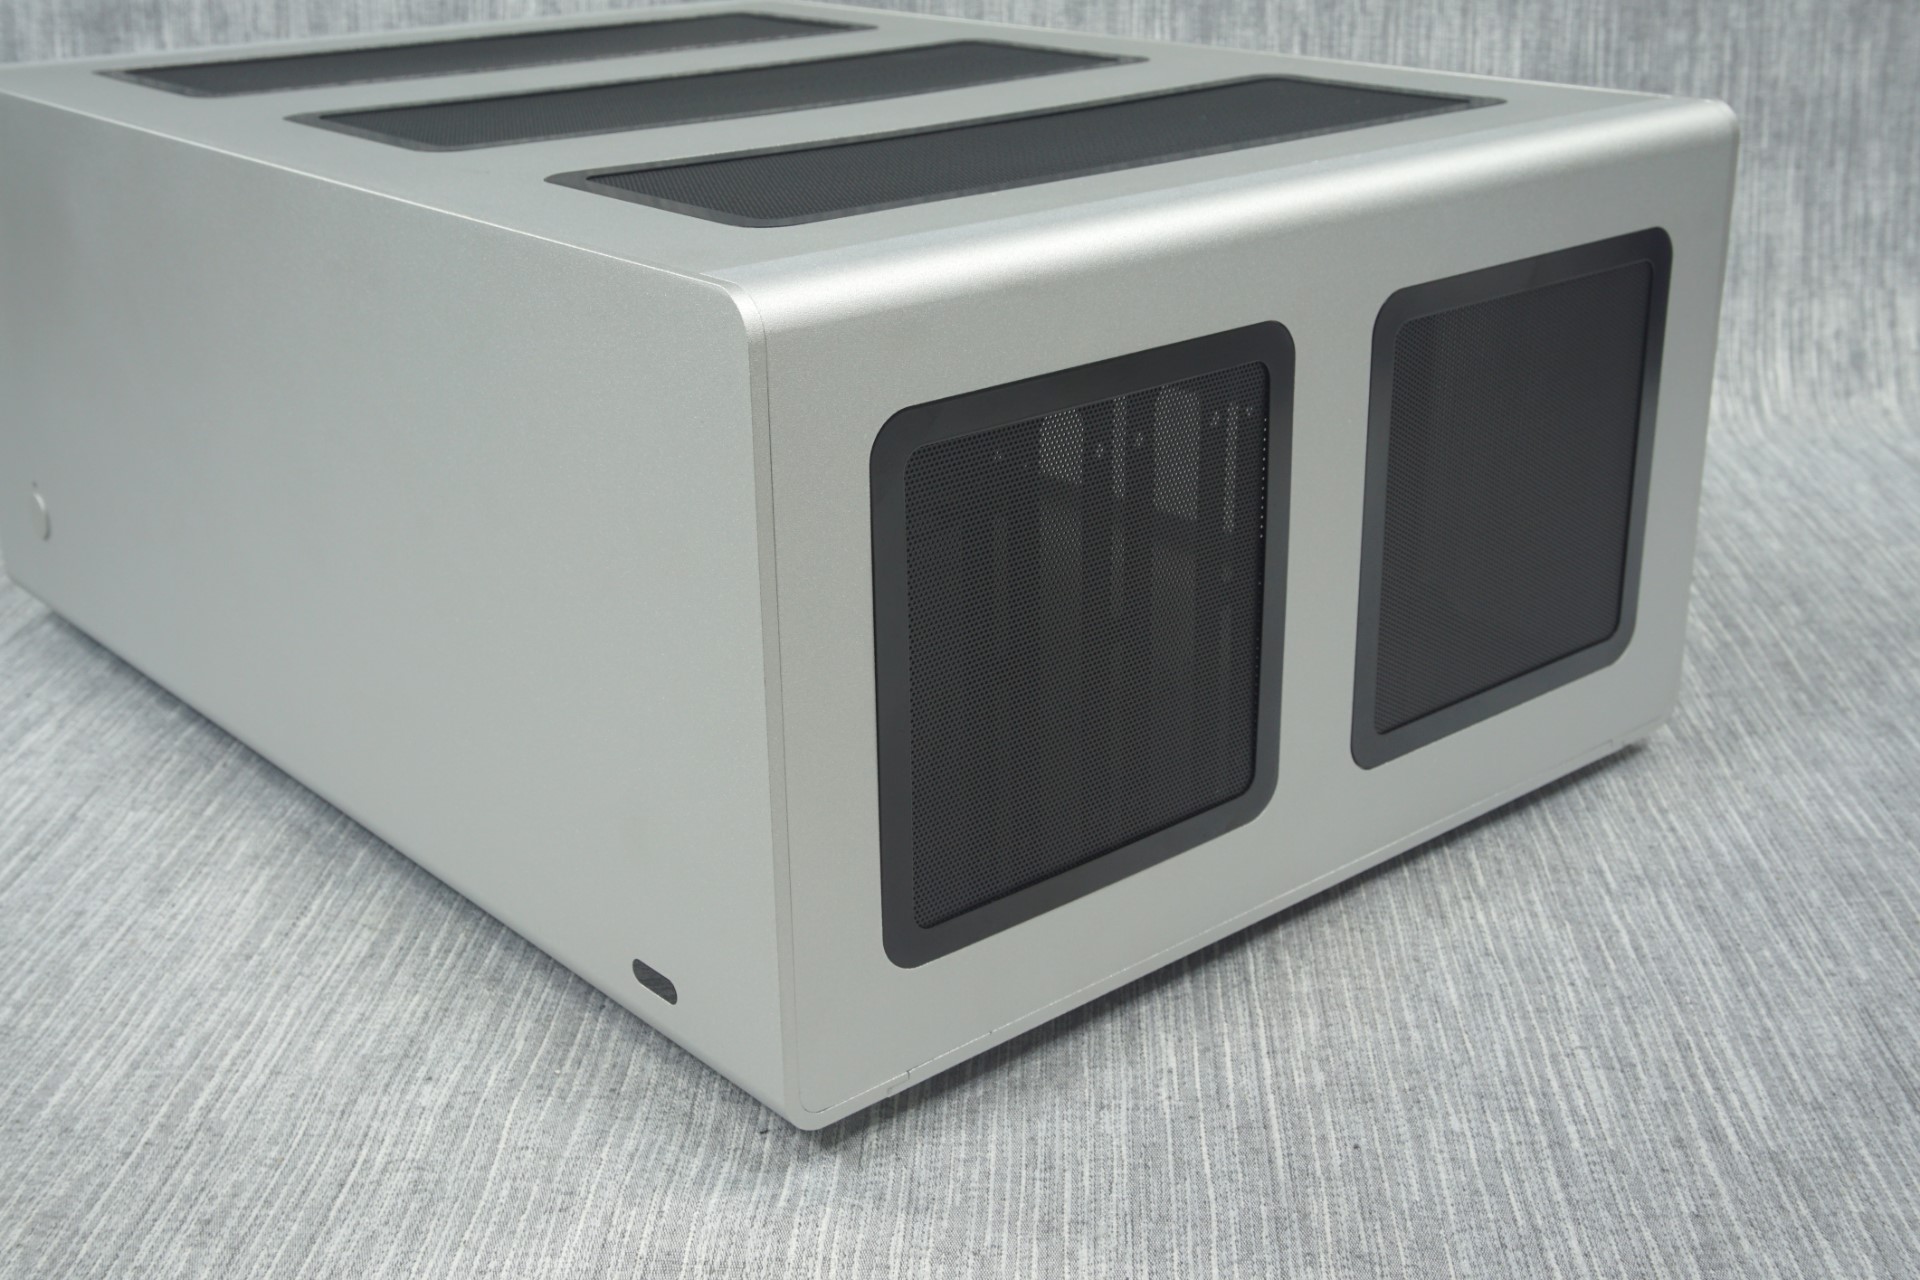 The Streacom F12c Aluminum Desktop Case Review